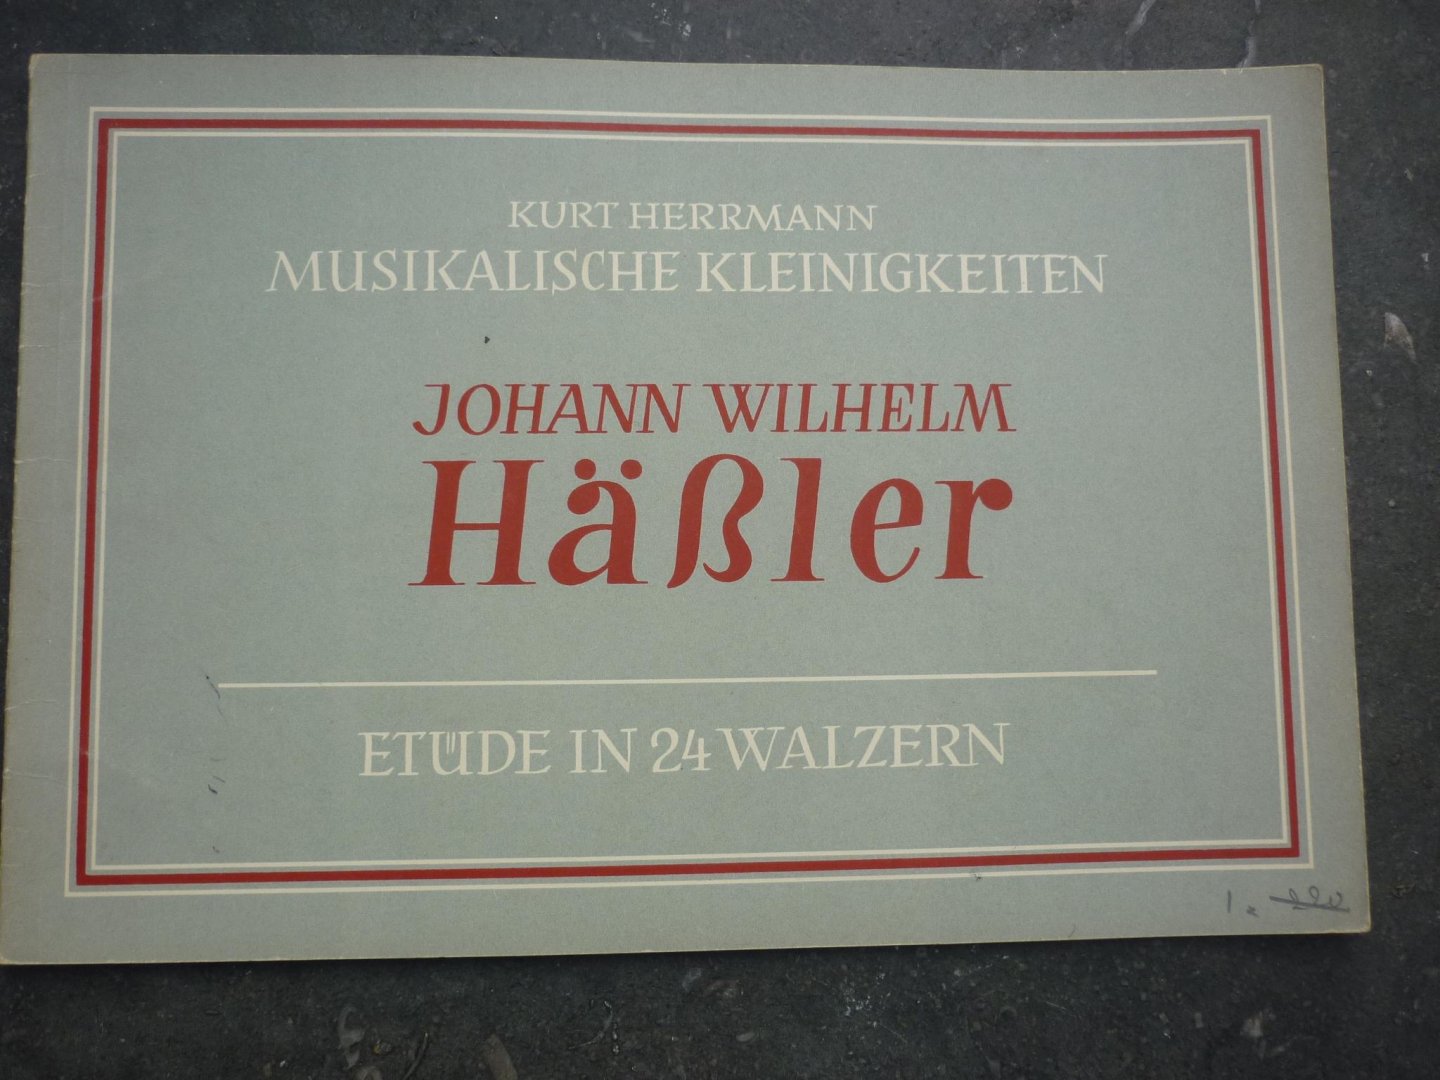 Haessler; Johann Wilhelm - 24 kleine Etüden in Walzerform; voor Piano (Kurt Herrmann - Musikalische Kleinigkeiten fur Klavier)